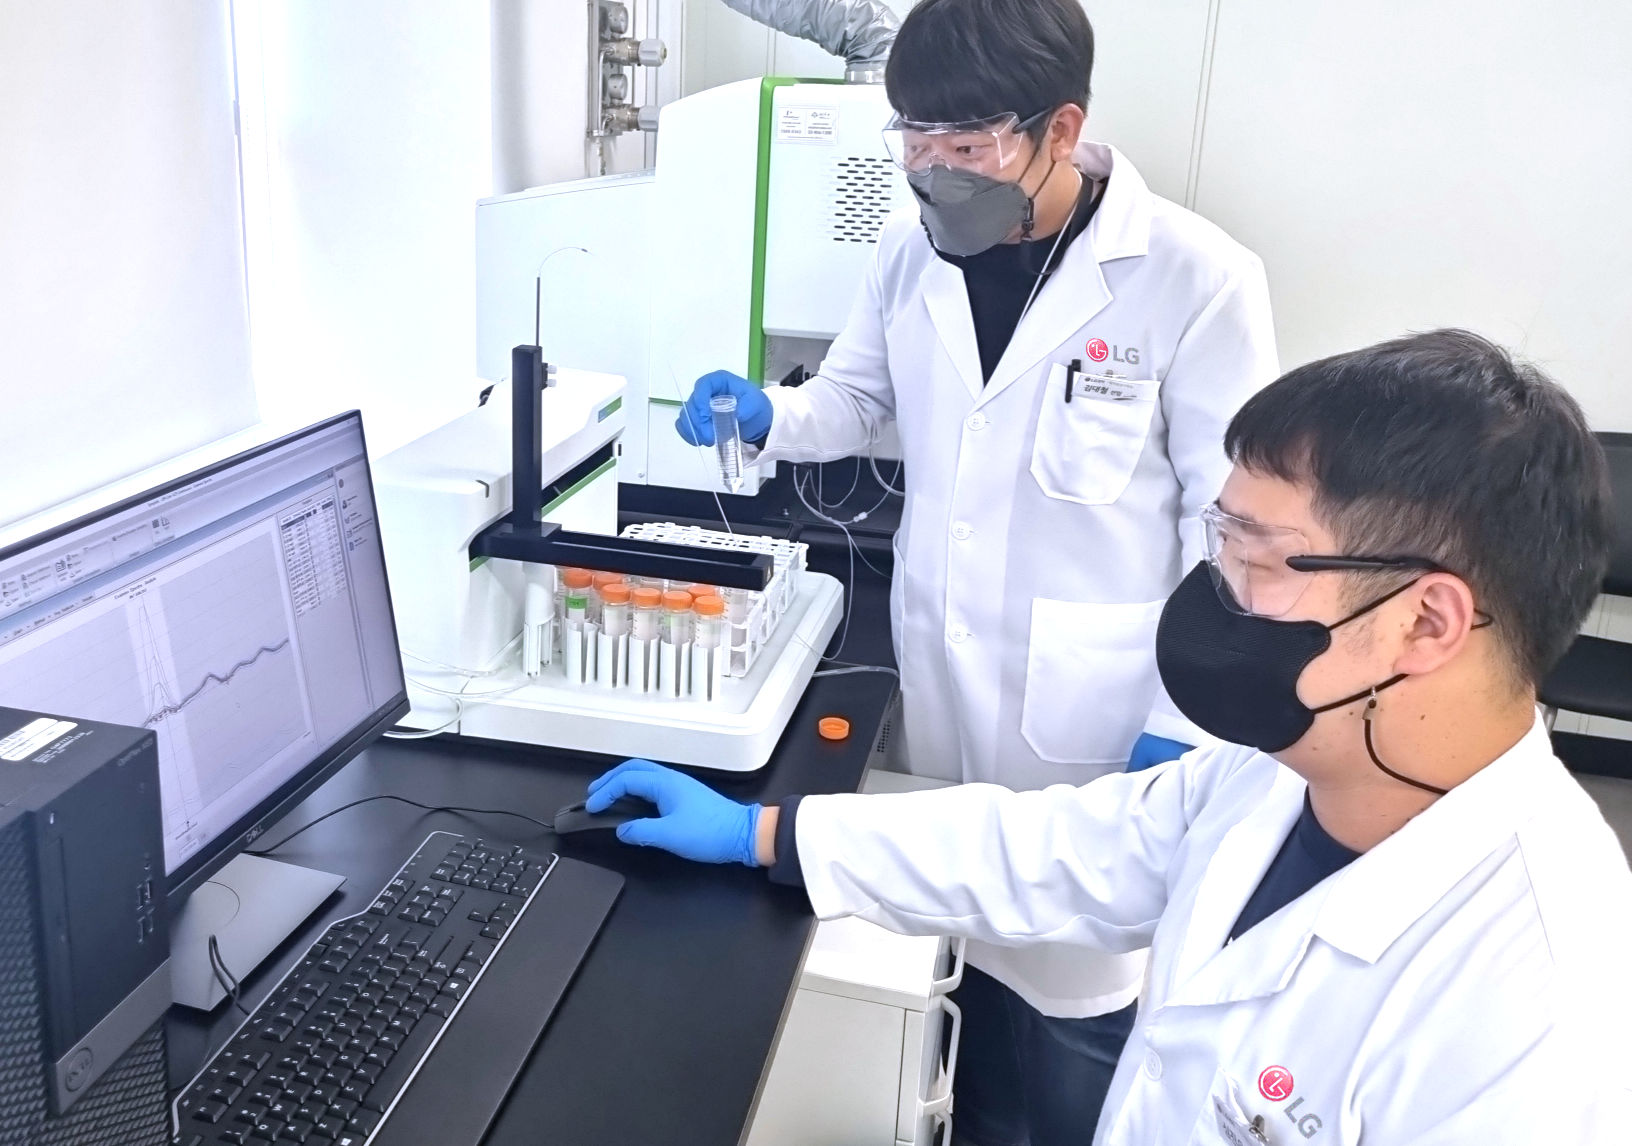 LG전자 연구원이 경기도 평택시 LG디지털파크 내 환경시험실에서 대기오염물질을 분석하고 있다. LG전자 제공